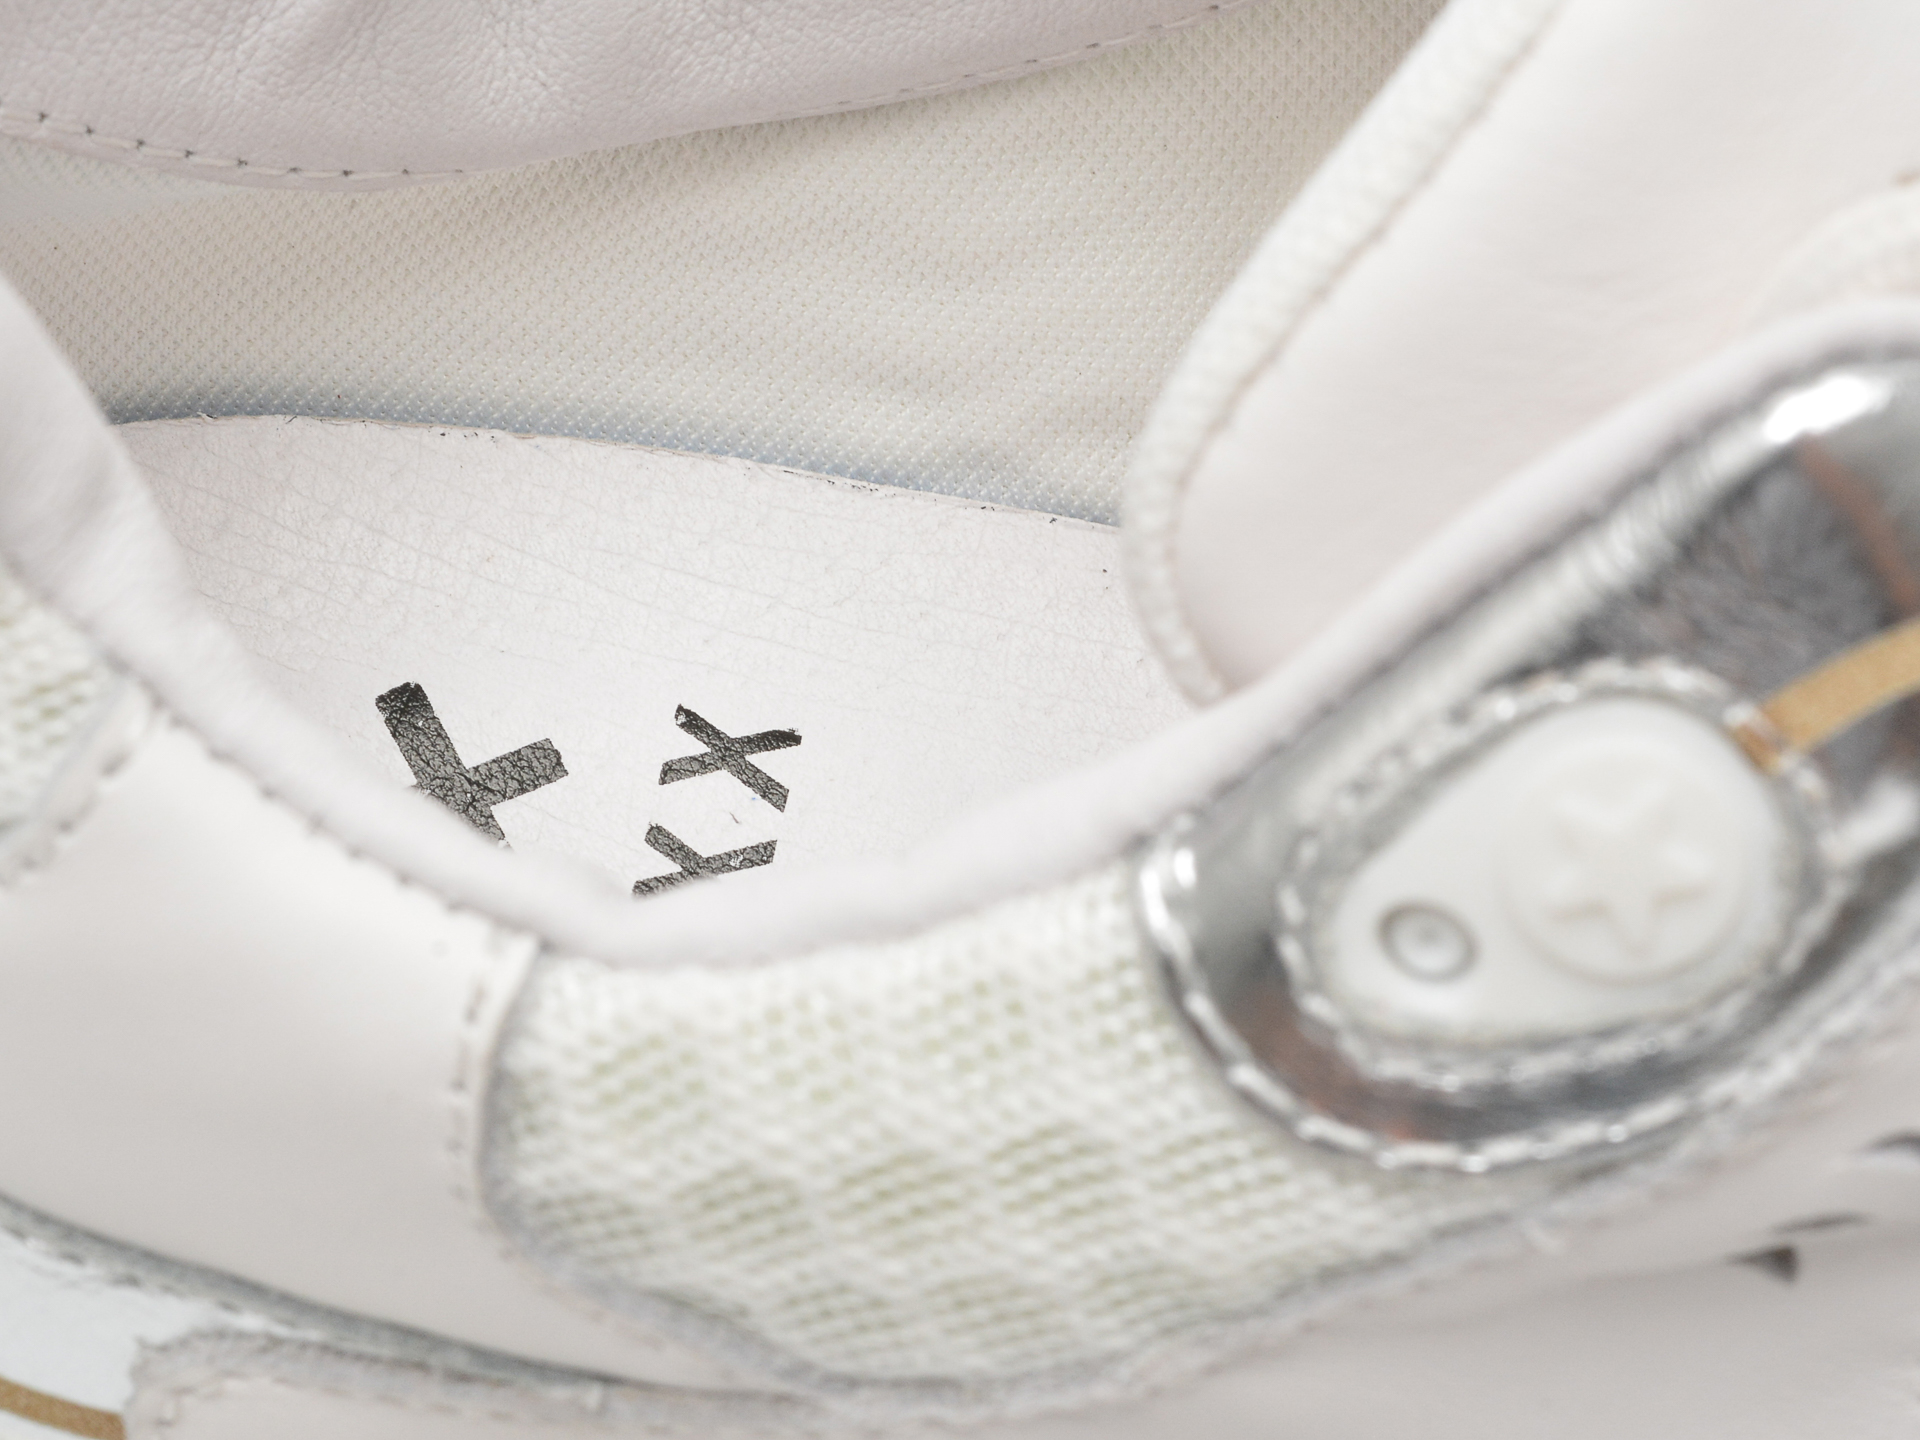 Poze Pantofi sport GRYXX albi, LN149, din material textil si piele naturala